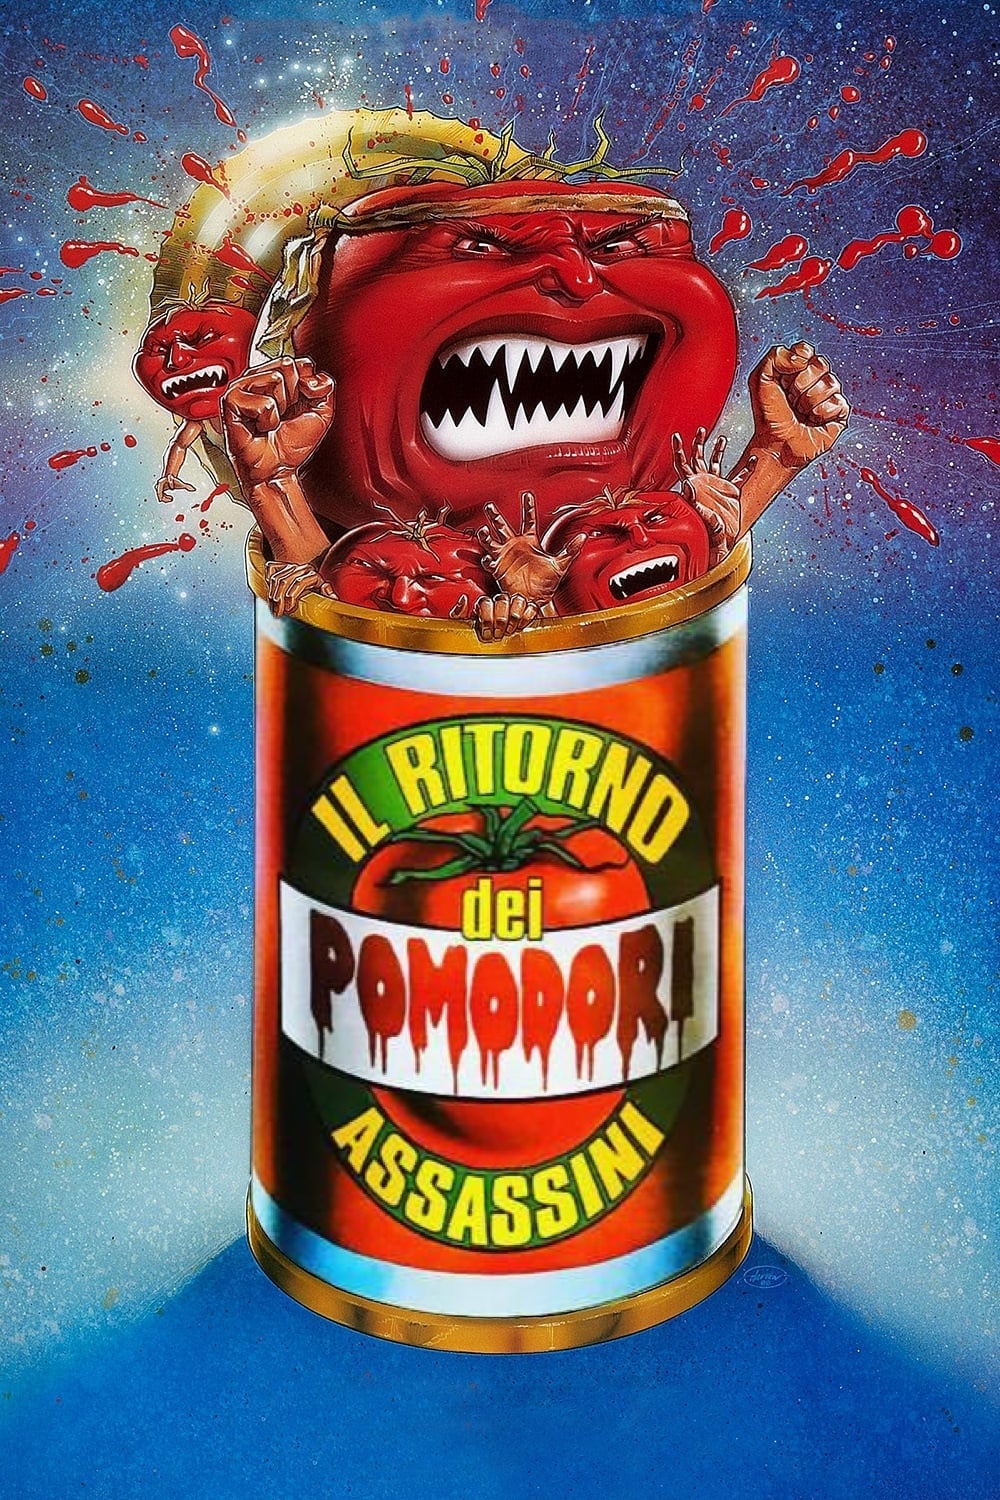 Il ritorno dei pomodori assassini [HD] (1988)